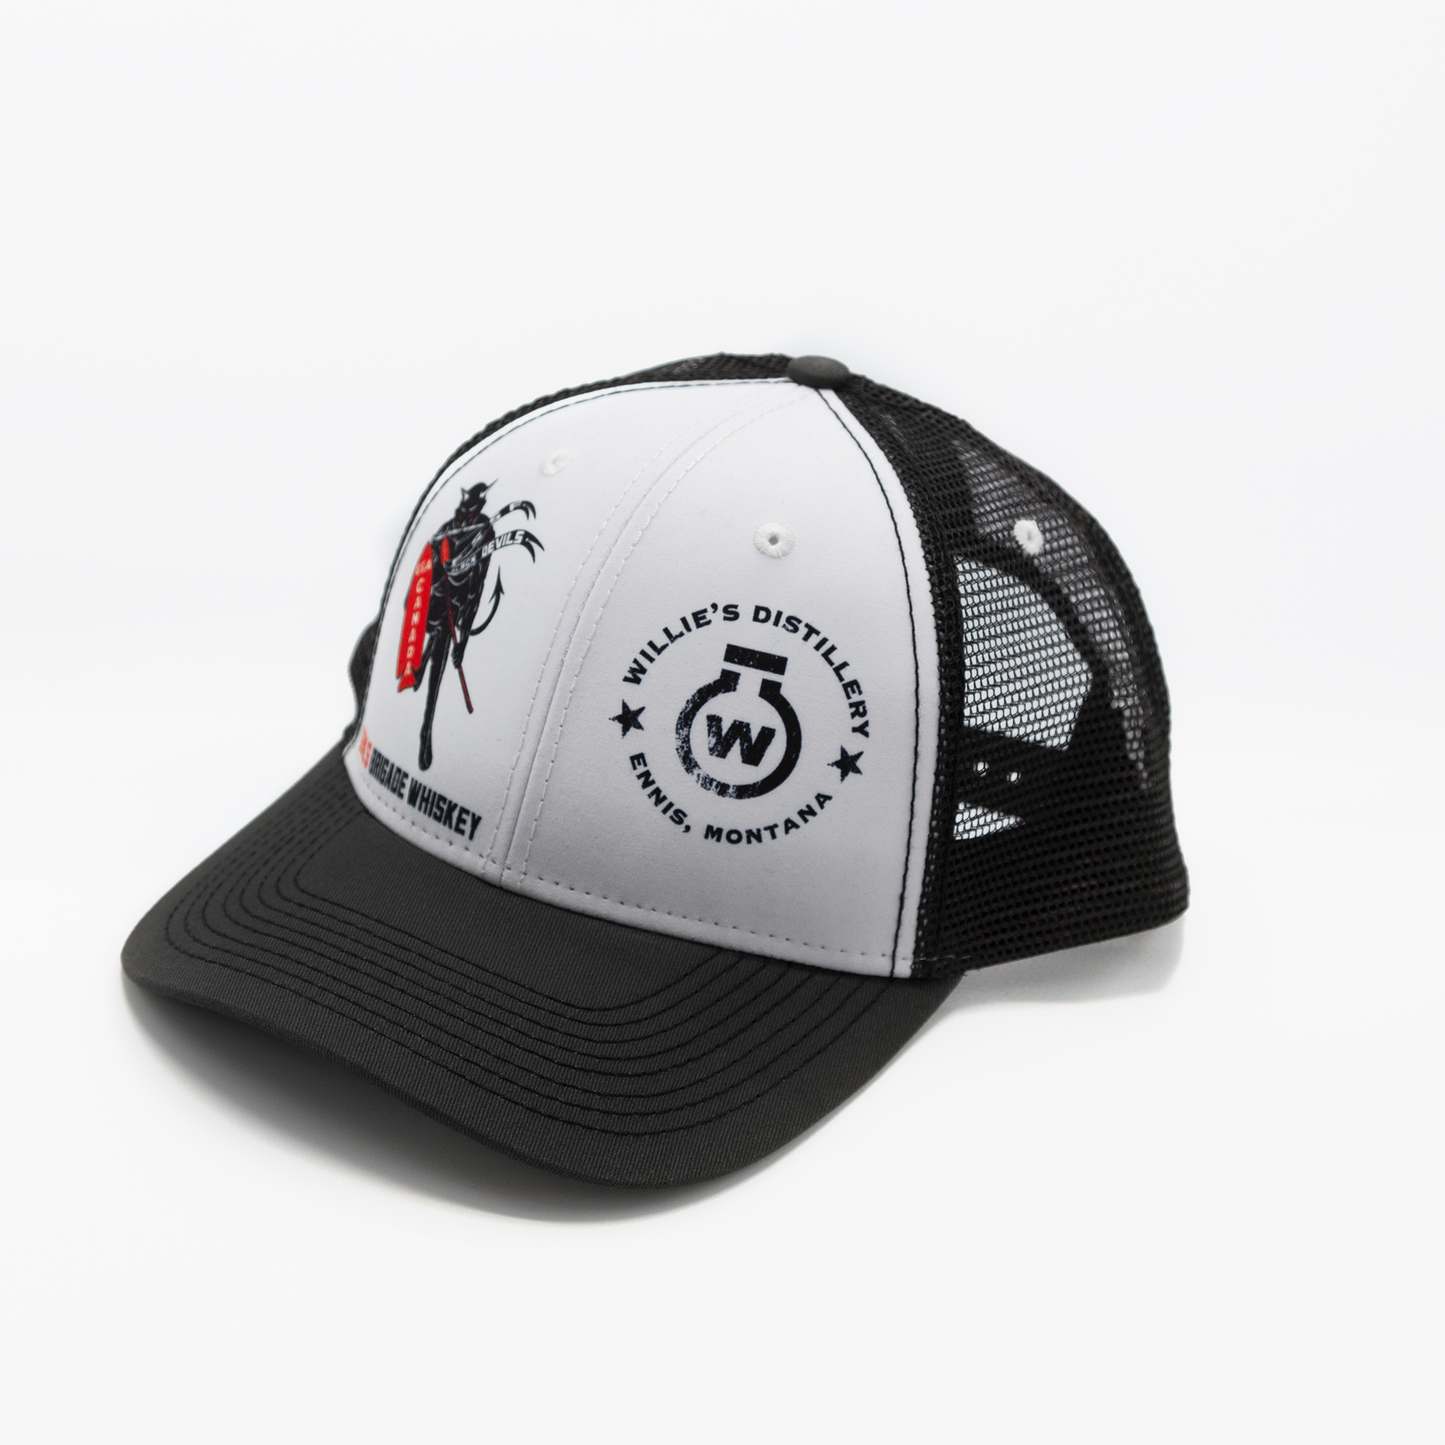 Devil's Brigade Structured Mesh Hat